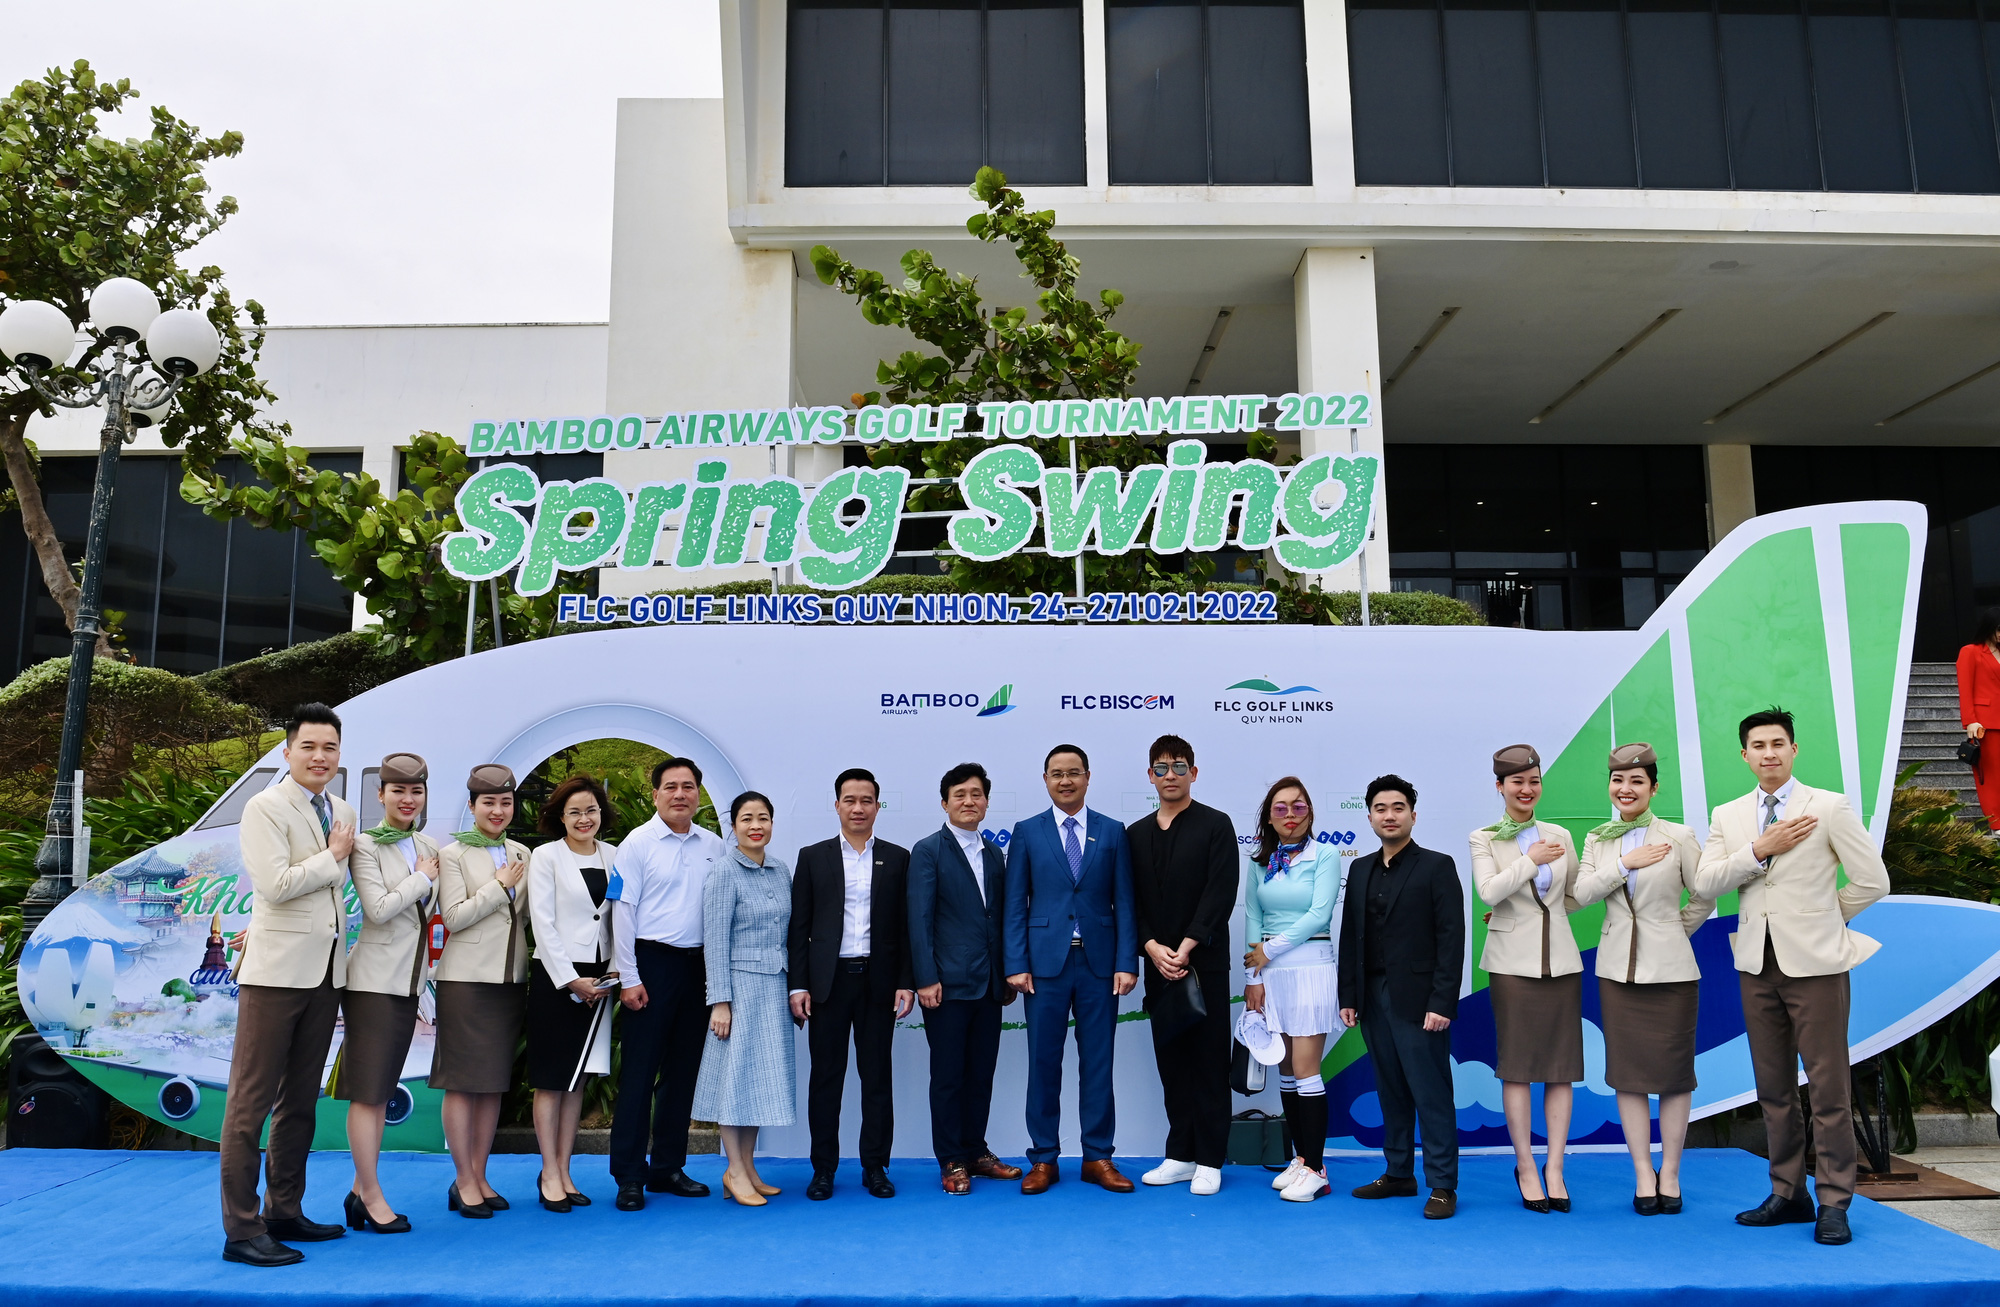 Chính thức khởi tranh giải đấu Bamboo Airways Golf Tournament 2022 - Spring Swing với giải thưởng HIO hàng chục tỷ đồng - Ảnh 2.